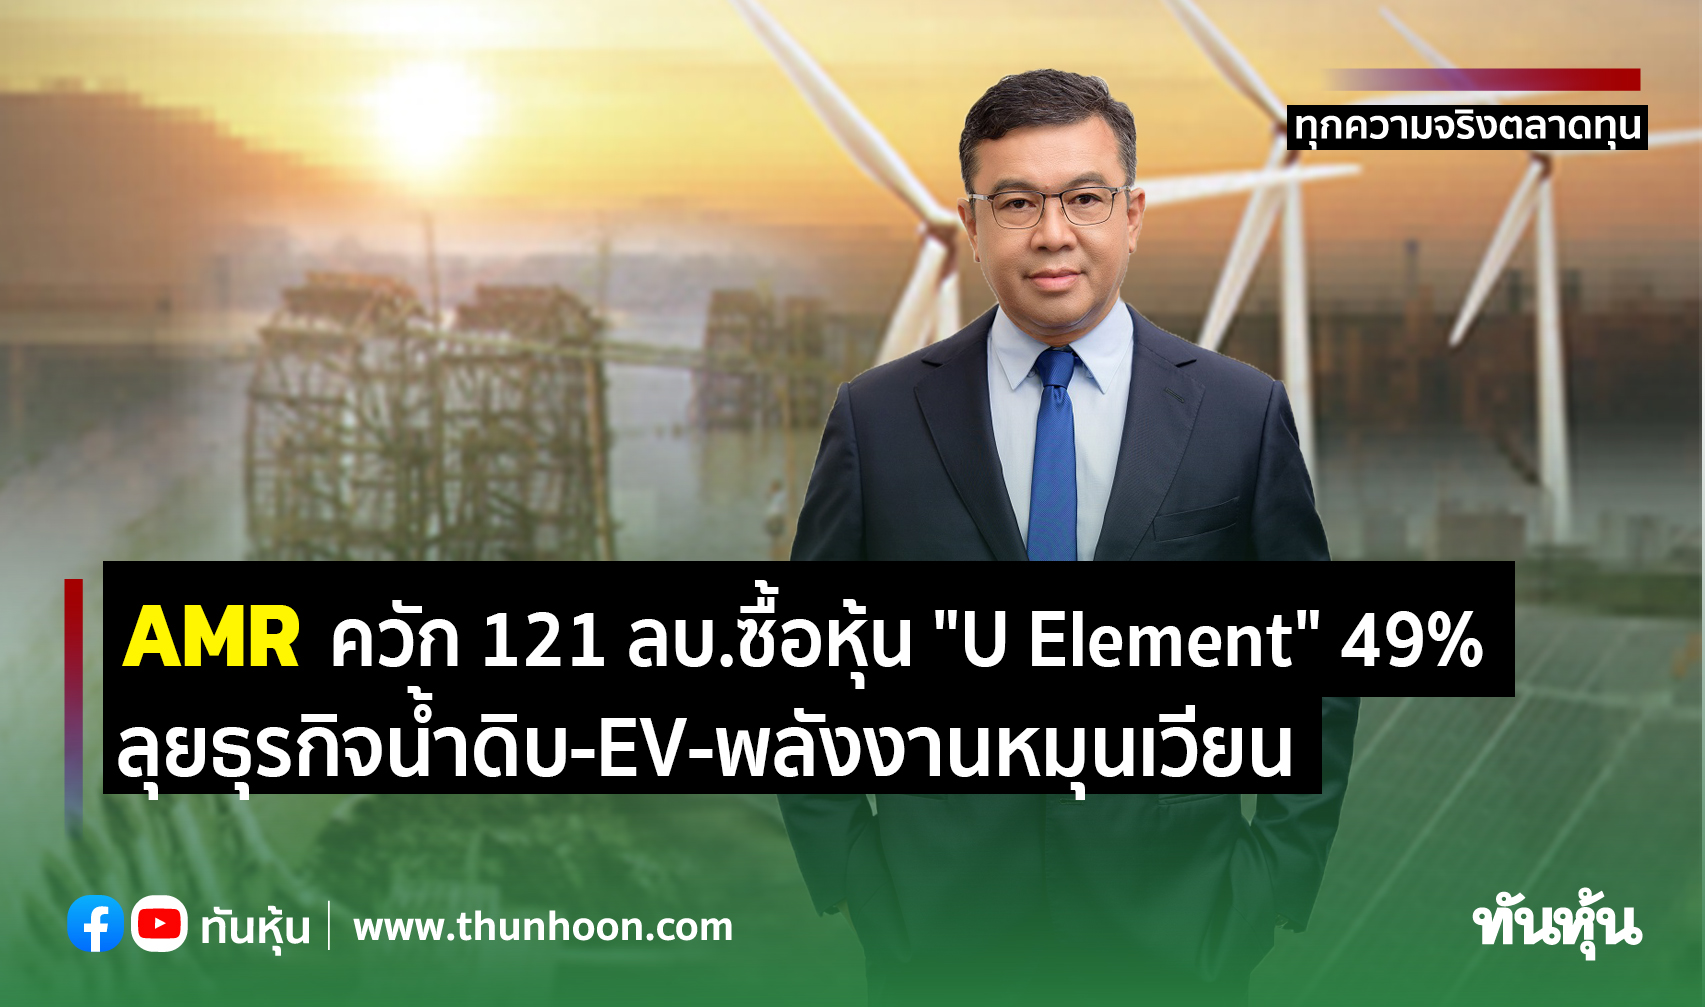 AMR ควัก 121 ลบ.ซื้อหุ้น "U Element" 49% ลุยธุรกิจน้ำดิบ-EV-พลังงานหมุนเวียน  